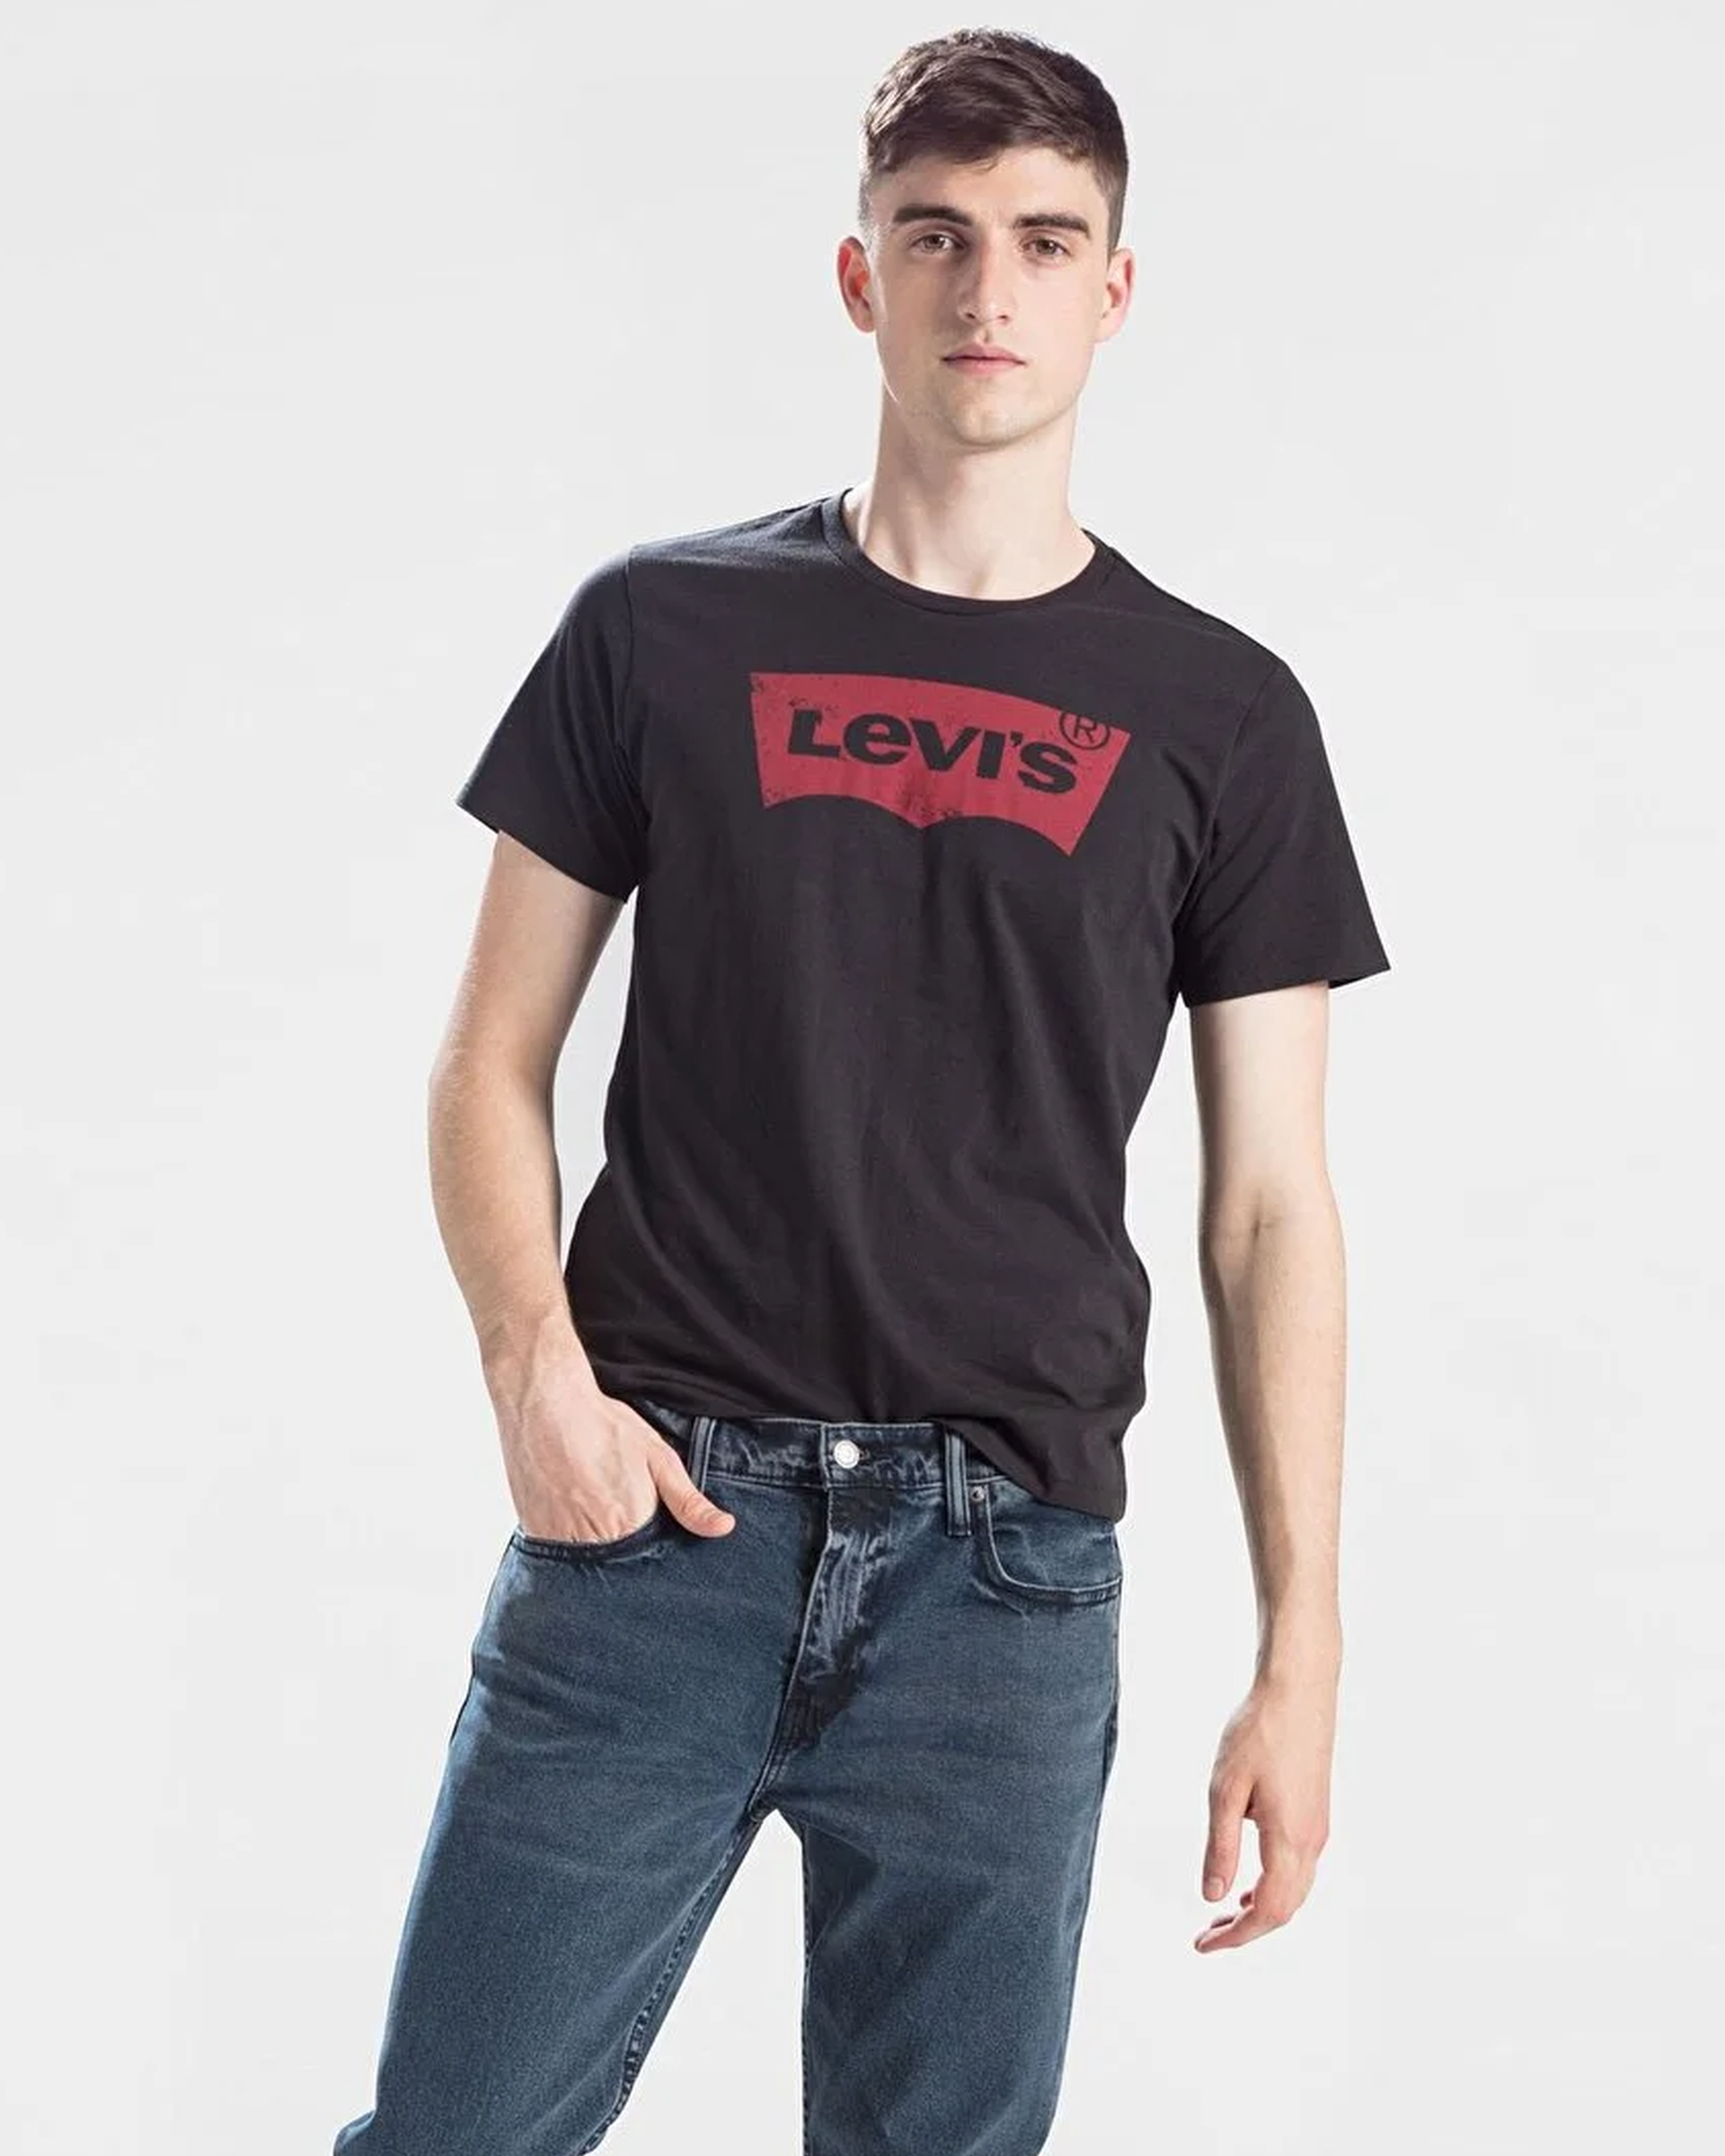 Купить футболку levis. Levis Shirt men. Футболка левайс черная мужская. Levis man футболка. Майка левайс мужские.